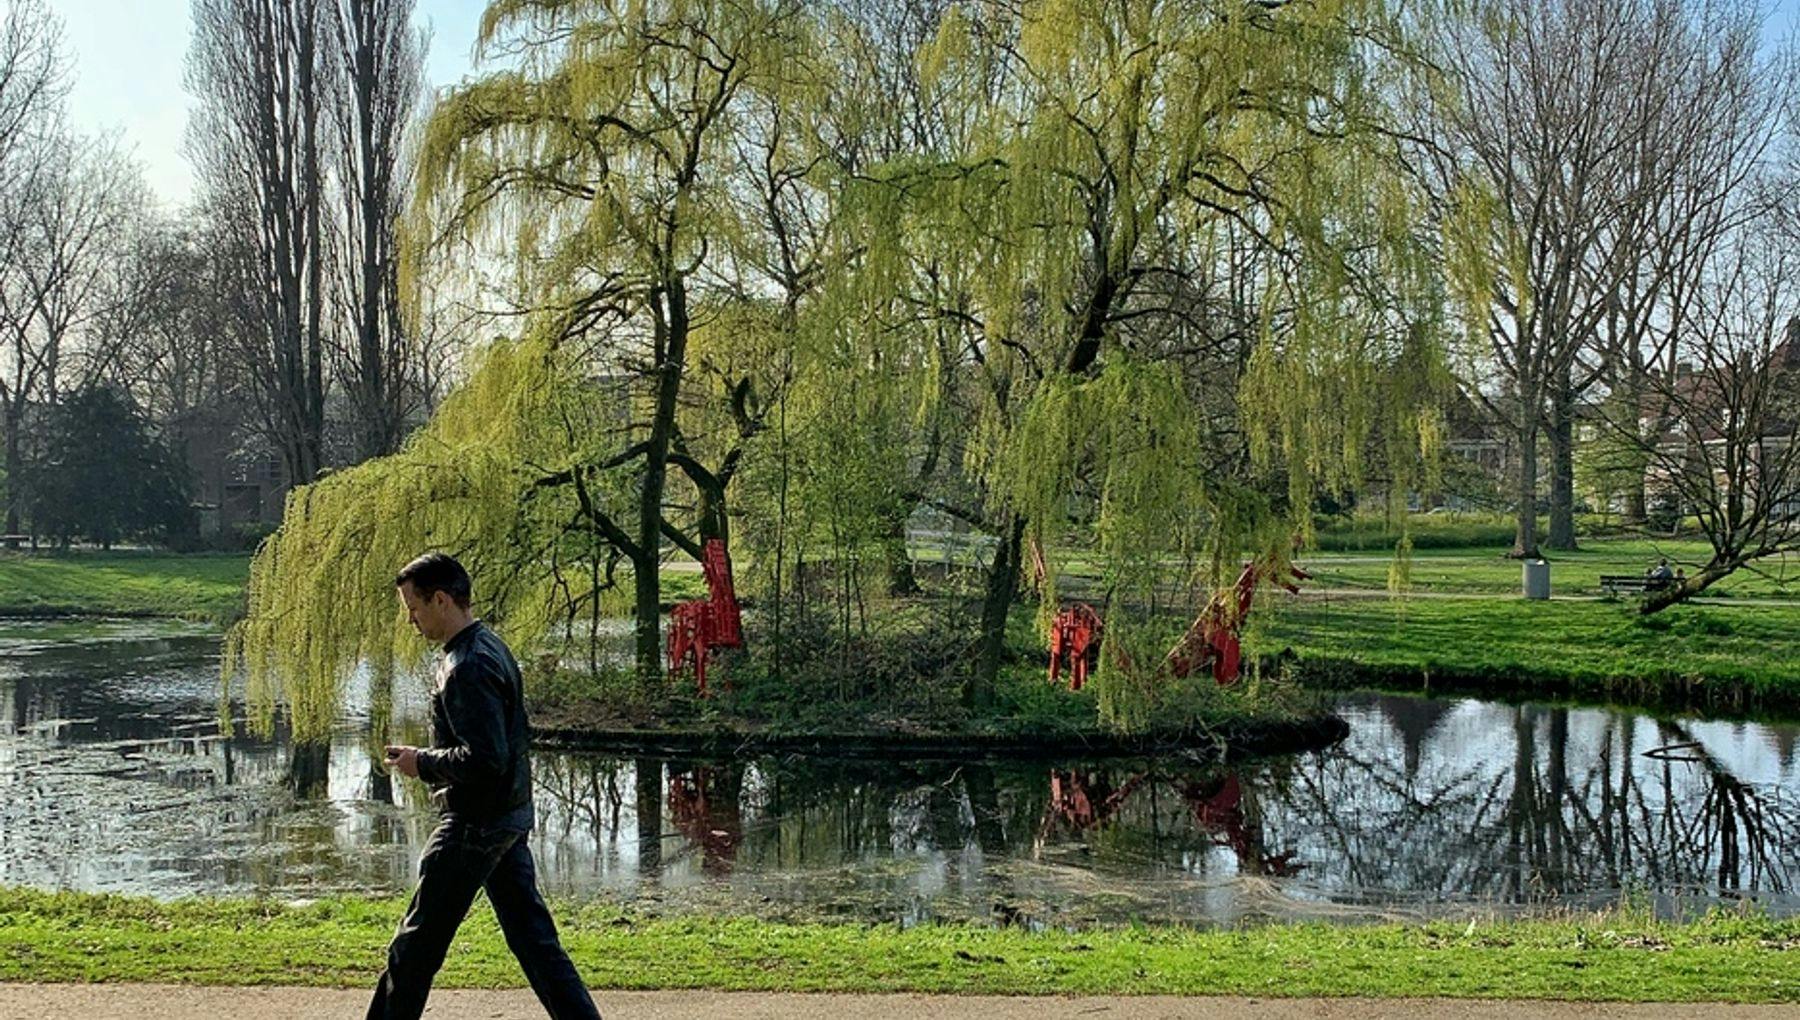 A man walking at the park